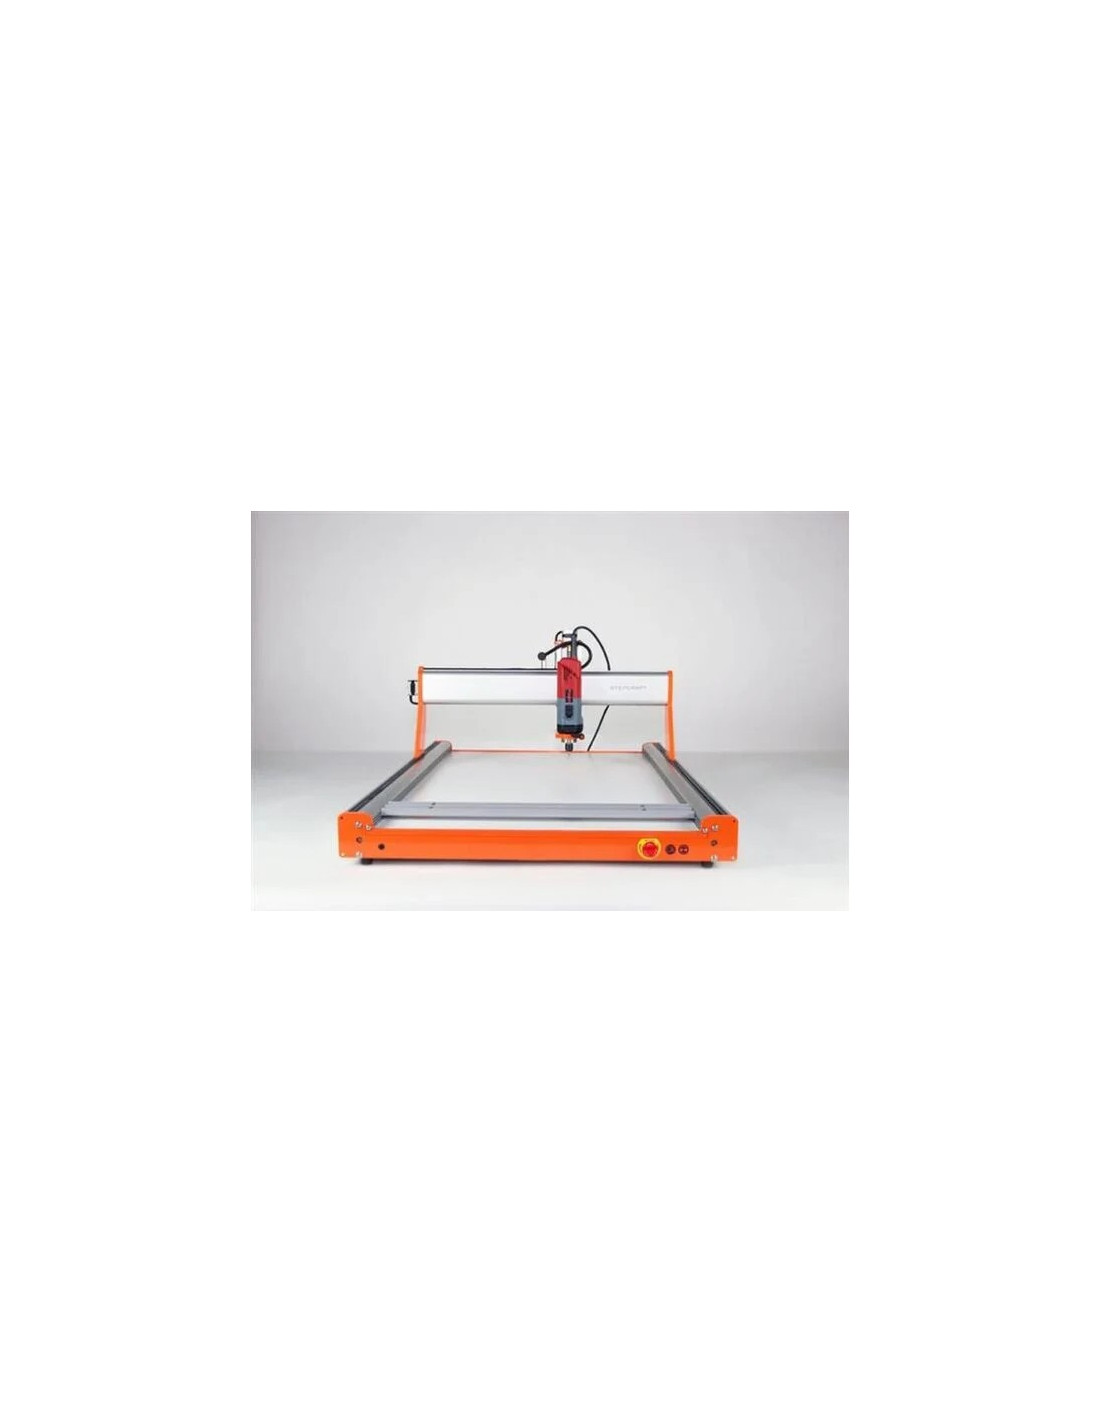 CNC milling machine - Construction kit STEPCRAFT-2 - D.840